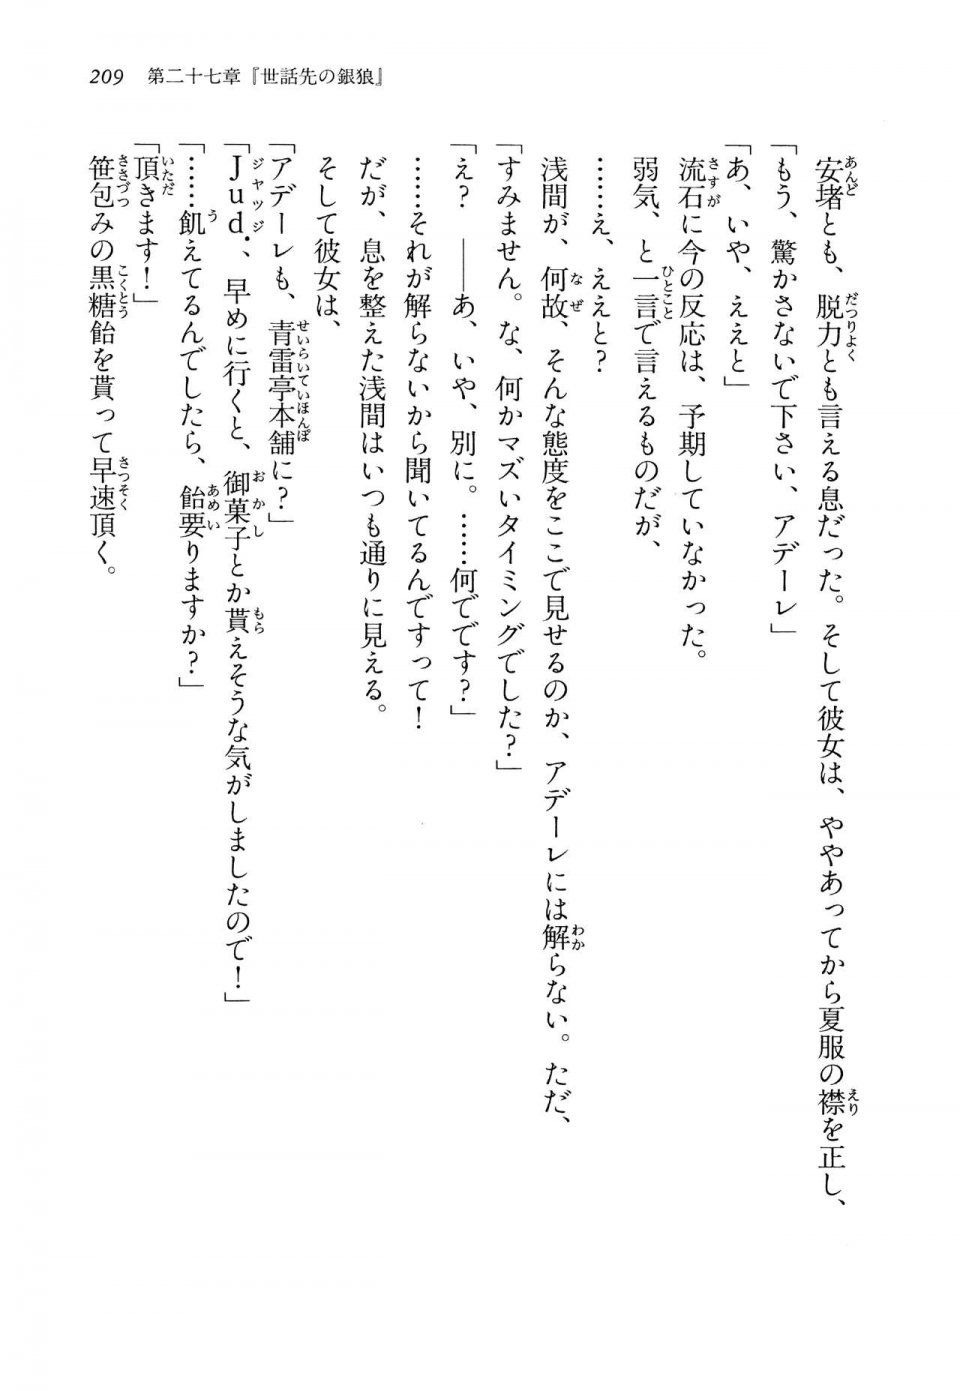 Kyoukai Senjou no Horizon LN Vol 14(6B) - Photo #209